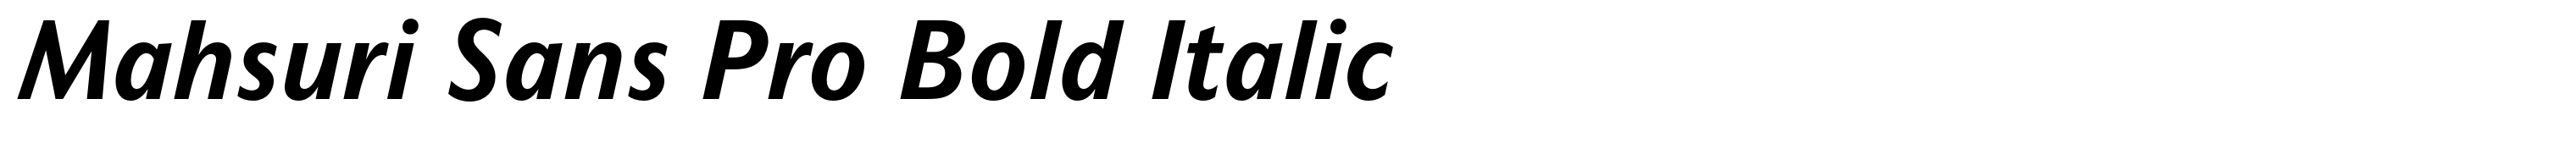 Mahsuri Sans Pro Bold Italic